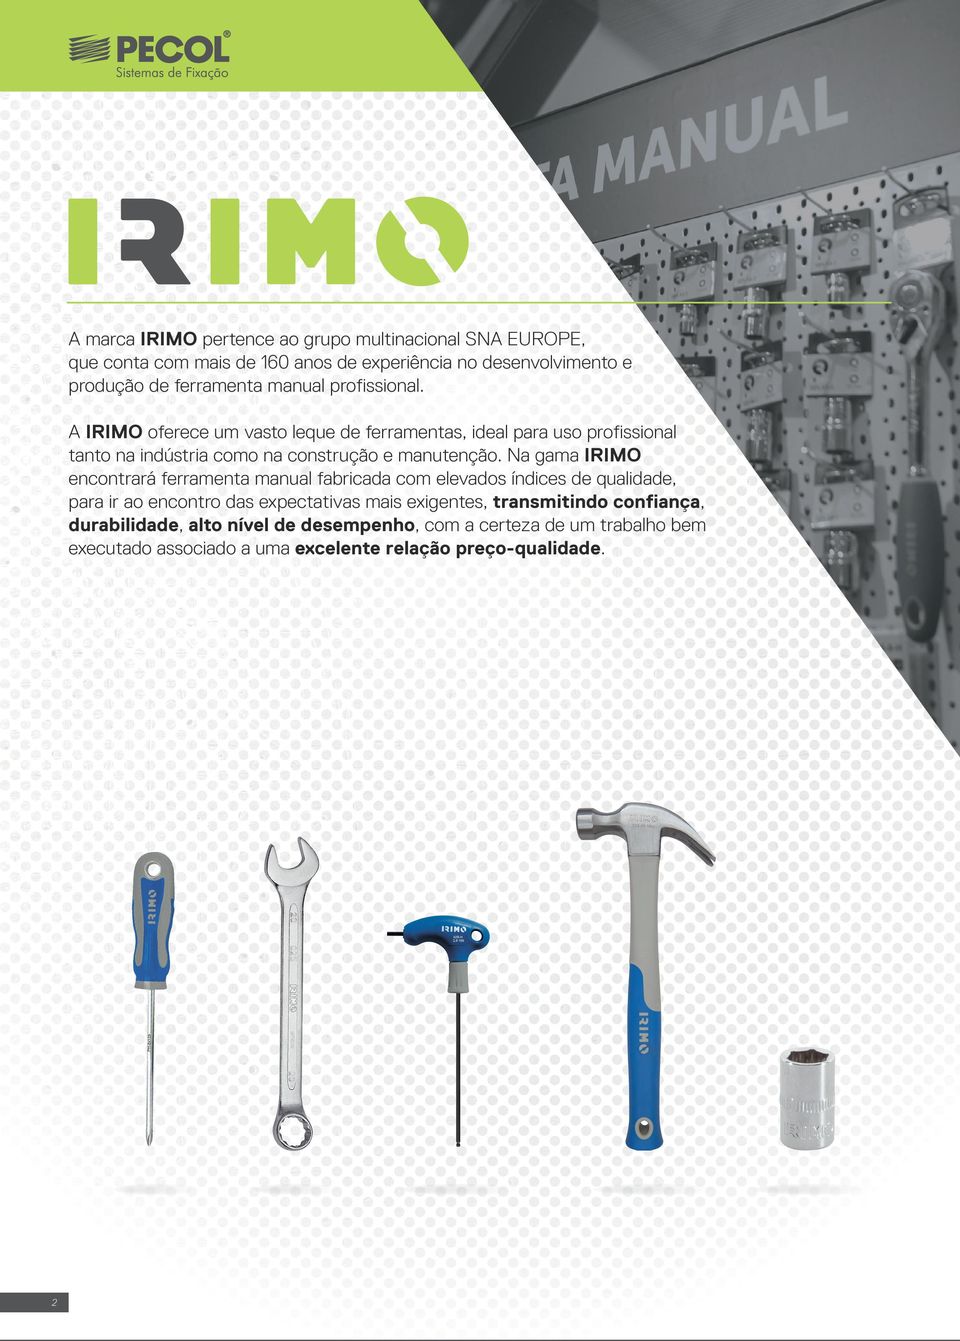 Na gama IRIMO encontrará ferramenta manual fabricada com elevados índices de qualidade, para ir ao encontro das expectativas mais exigentes,